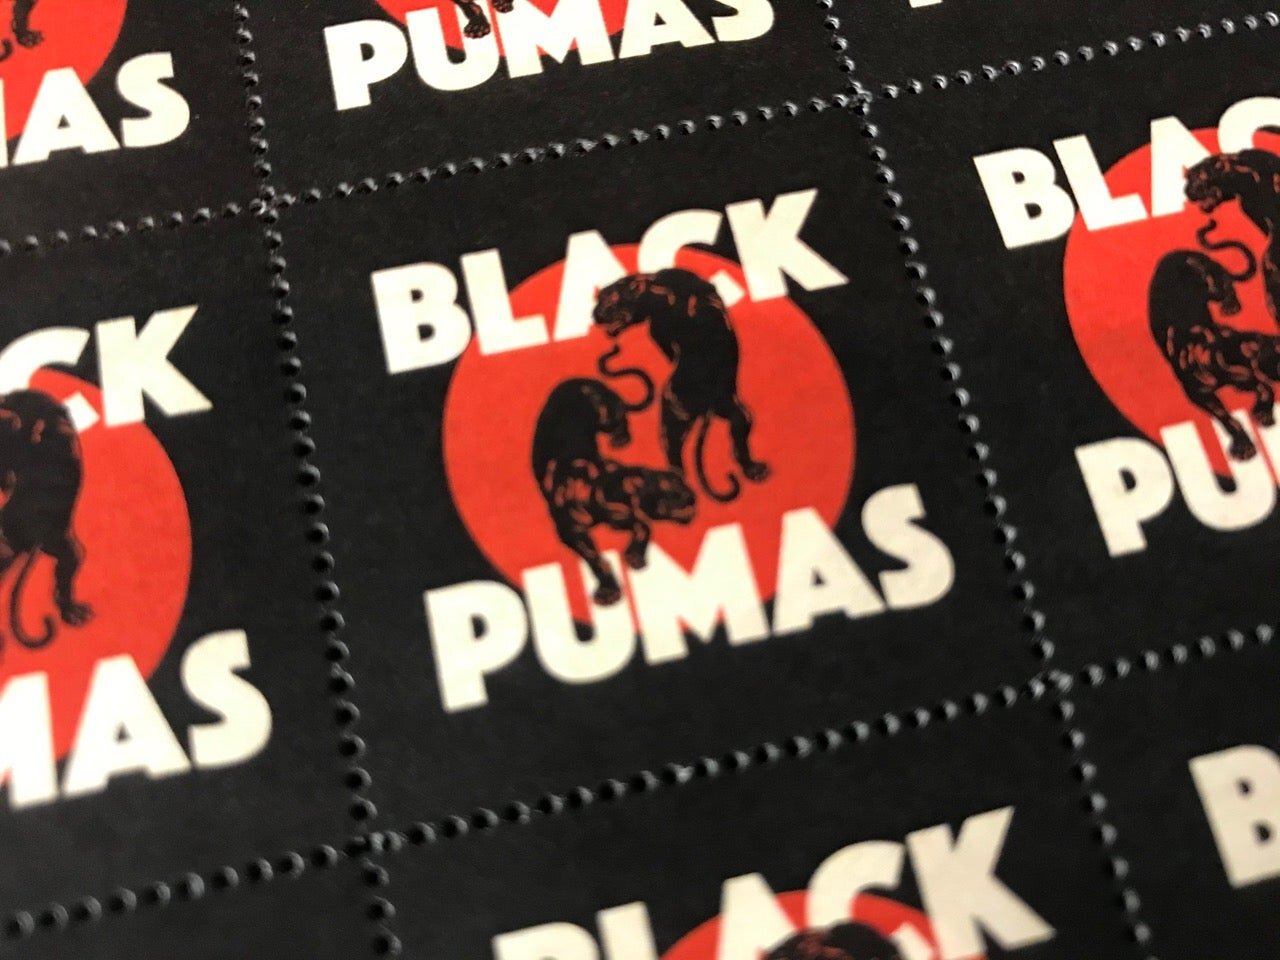 Black Pumas Stamp Sheet